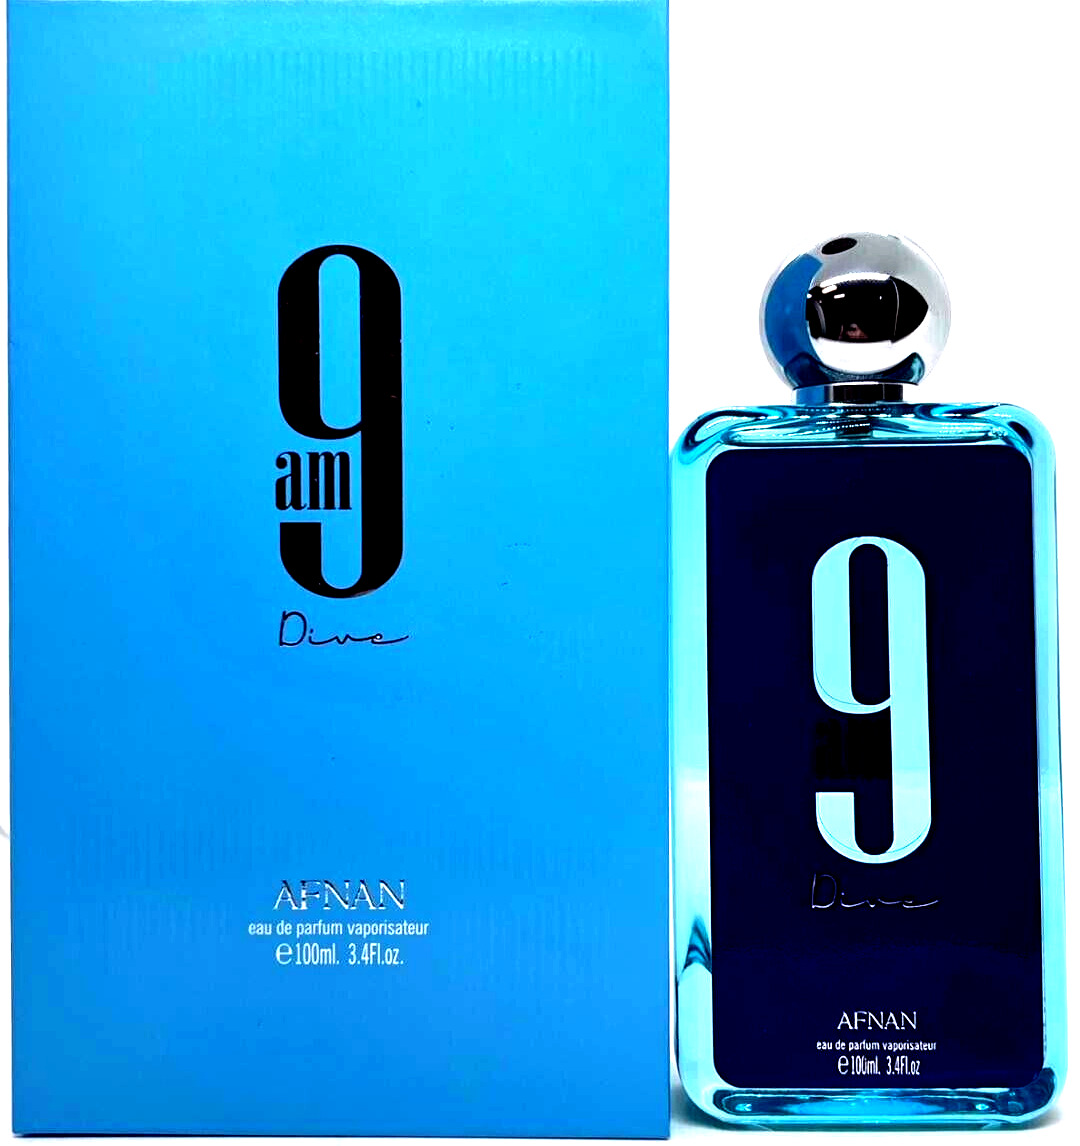 Picture of Afnan Perfumes 458011 3.4 oz Afnan 9 am Dive Eau De Parfum Spray for Unisex